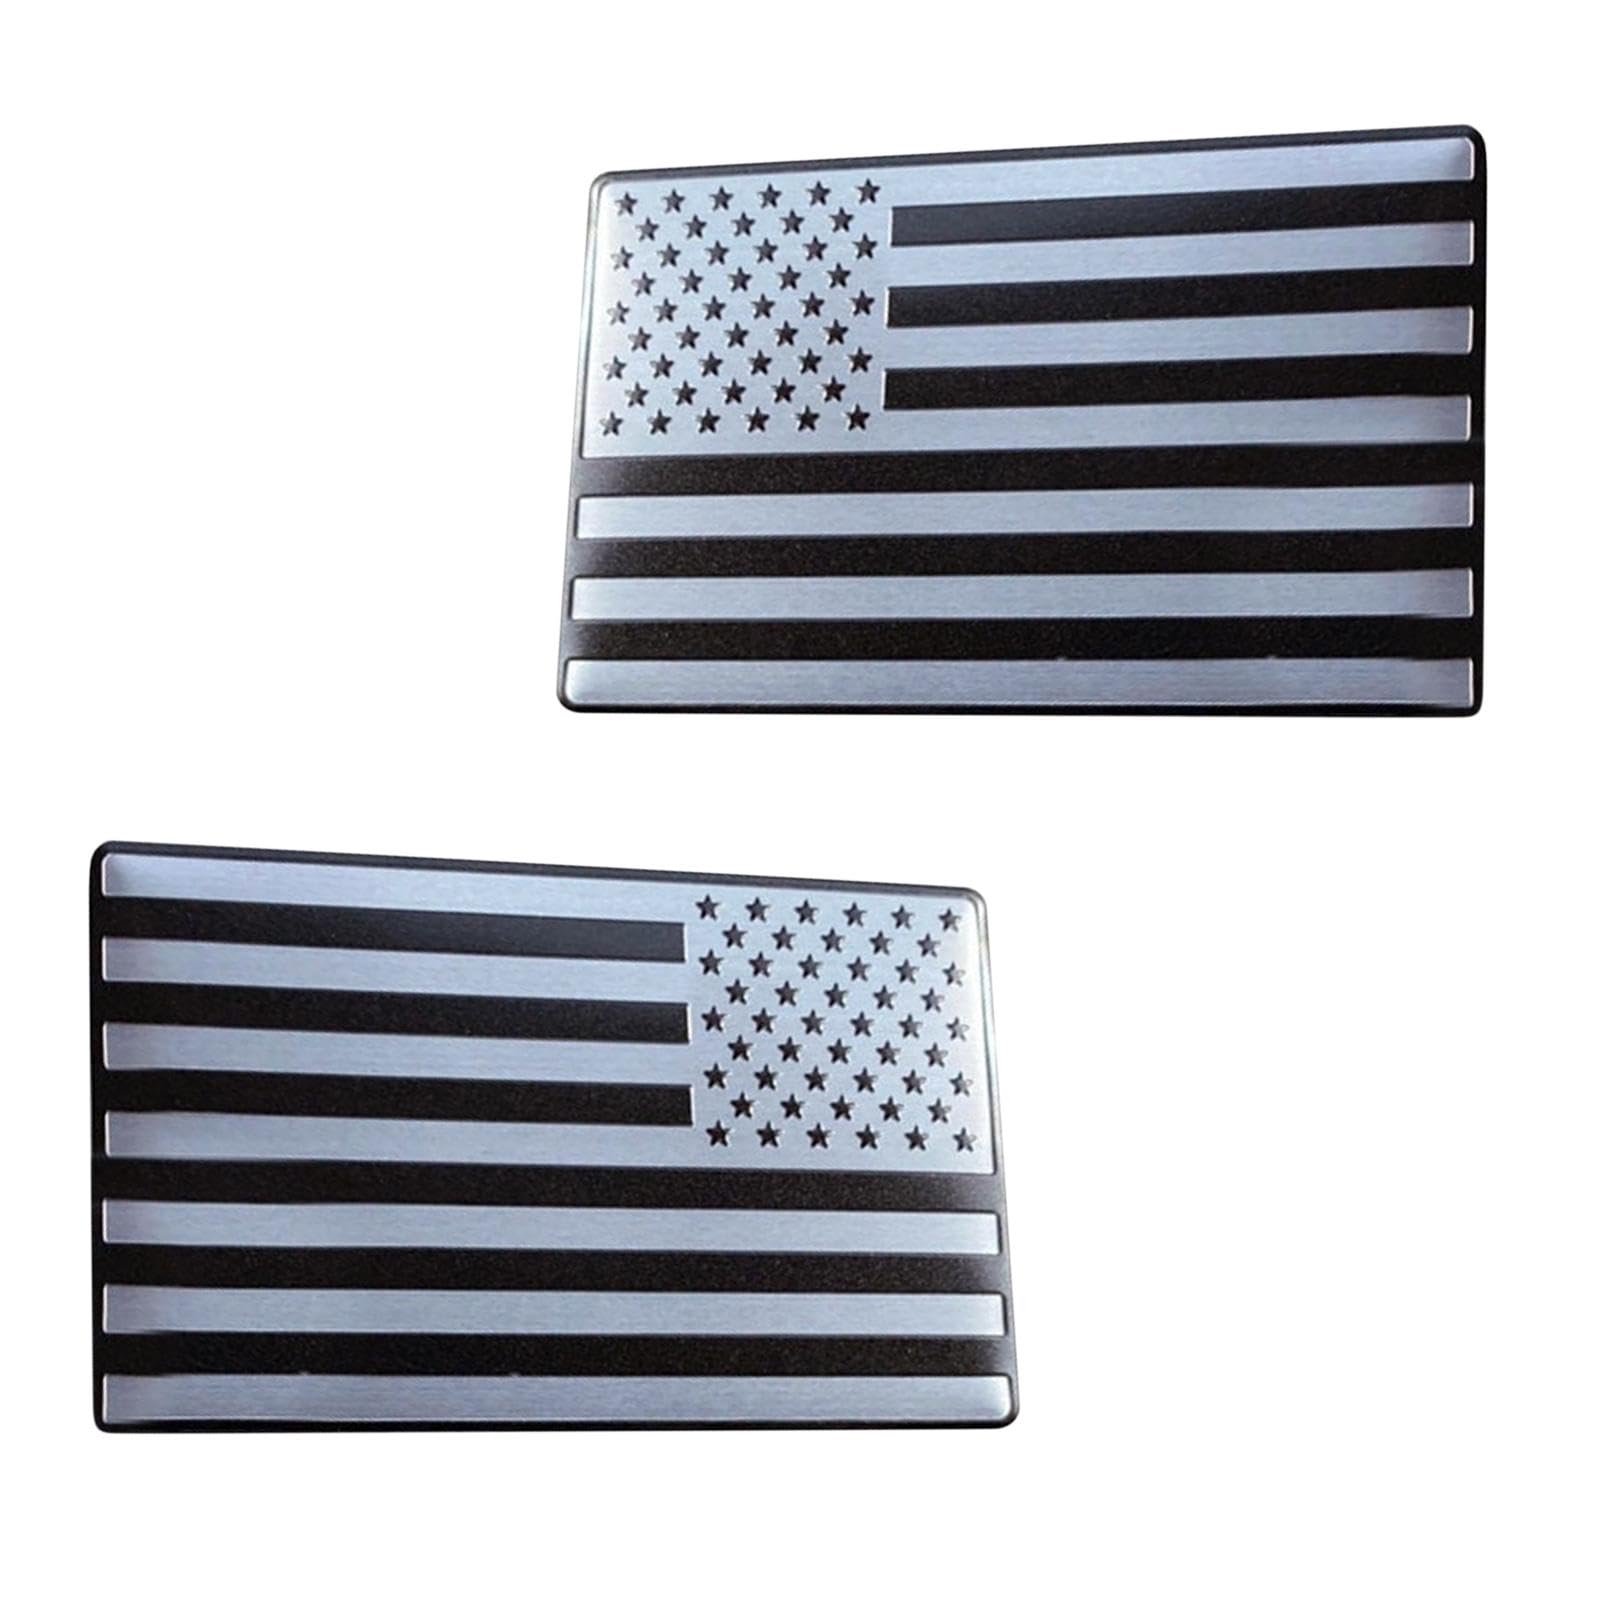 Sirseon 3D-Autoaufkleber mit amerikanischer Flagge aus Metall, Autoaufkleber mit US-Flagge, 2 Stück Autoflaggen-Aufkleber, Matter Metall-Aluminium-Körperaufkleber, Dekor für Autoflaggen-Aufkleber, von Sirseon